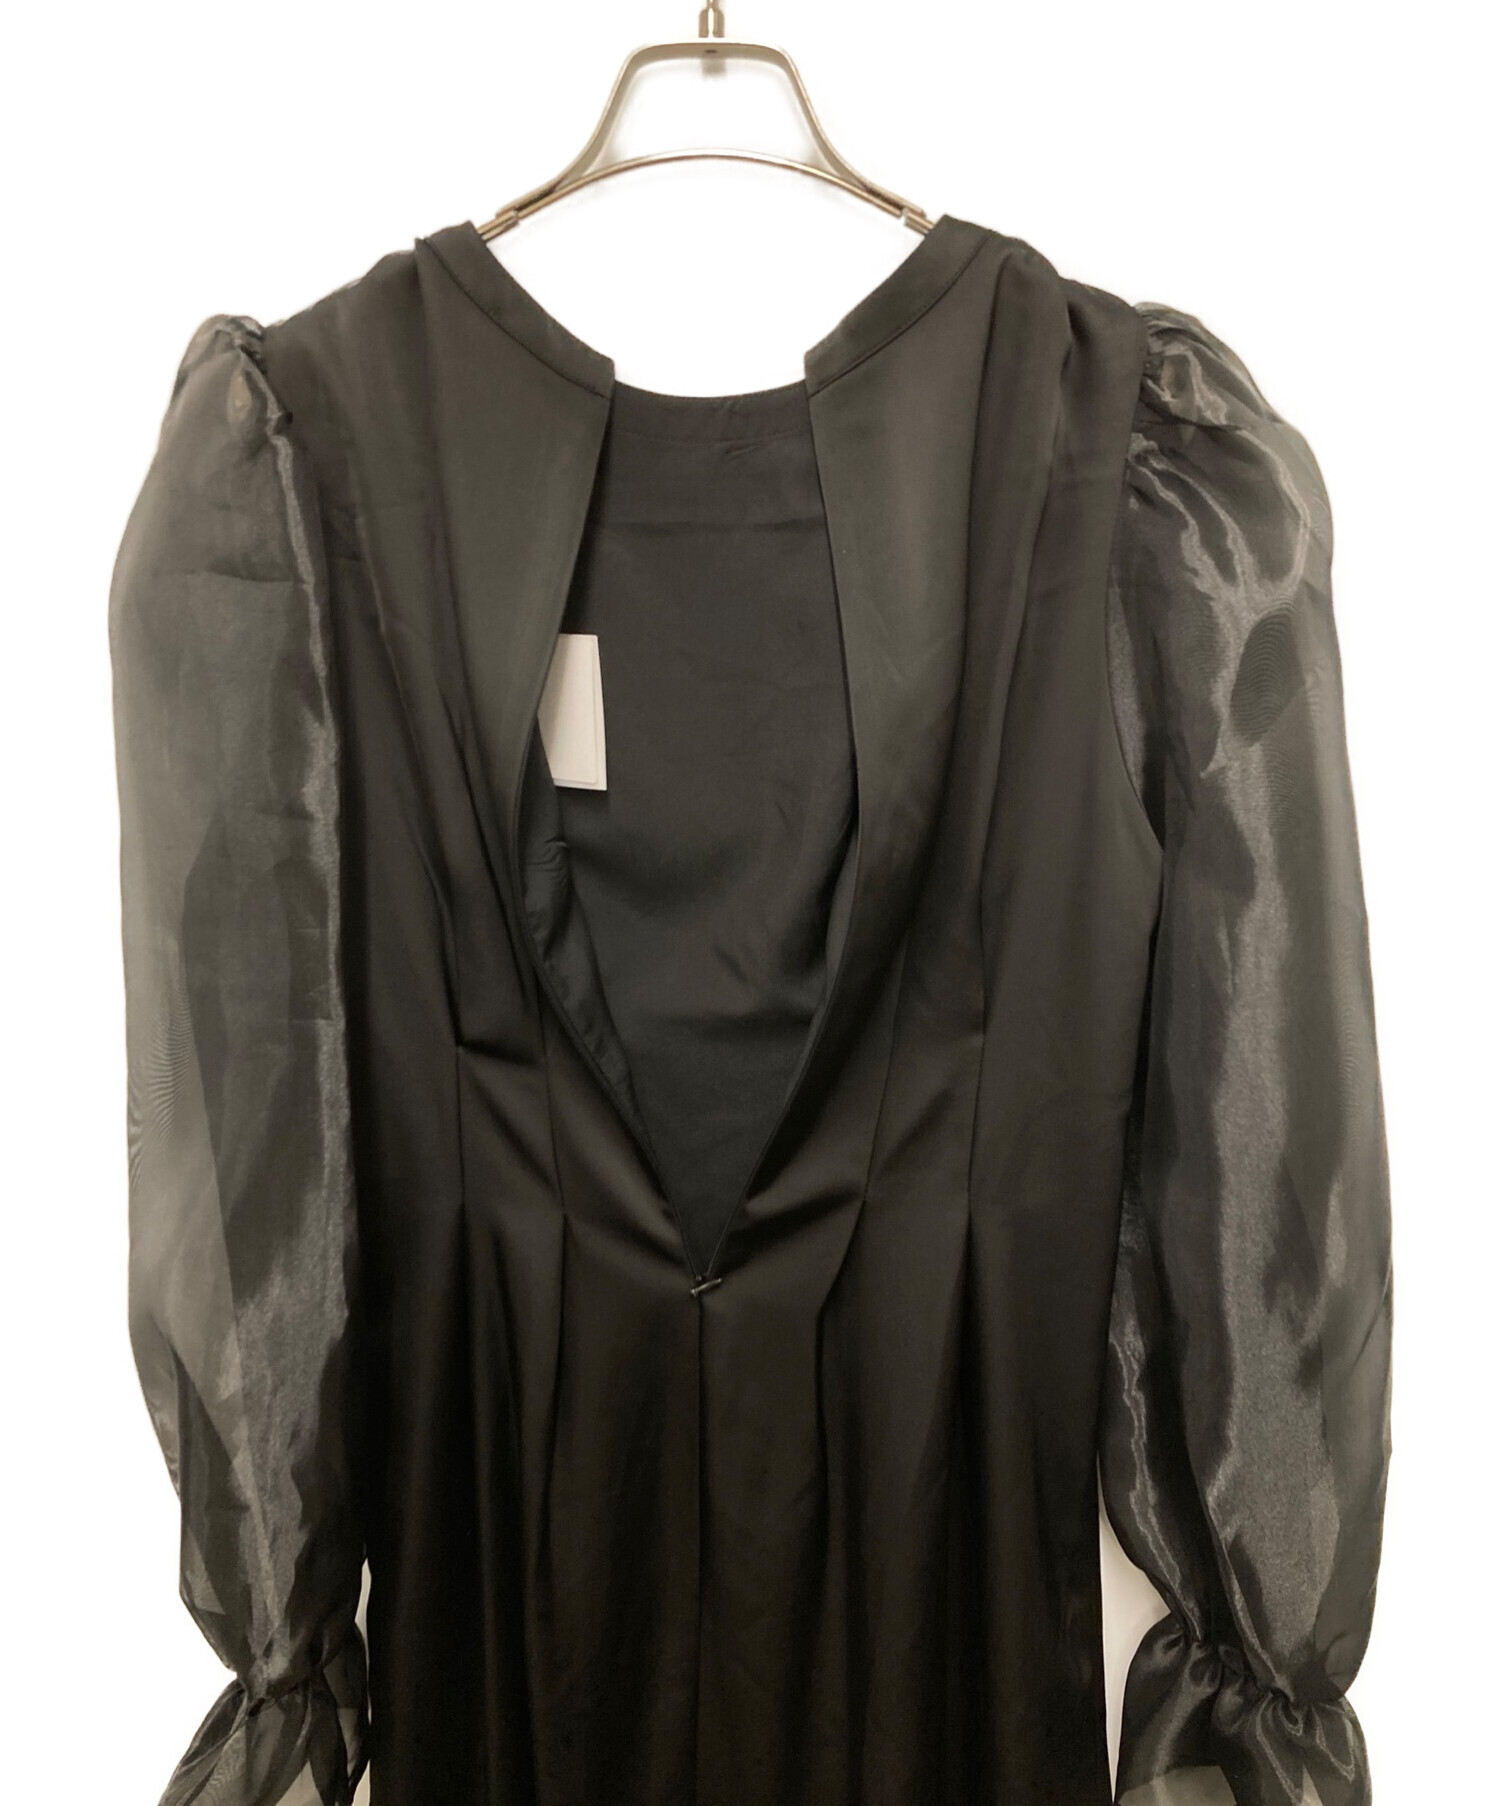 AMAIL (アマイル) Mature bon sleeve dress ワンピース ブラック サイズ:F 未使用品